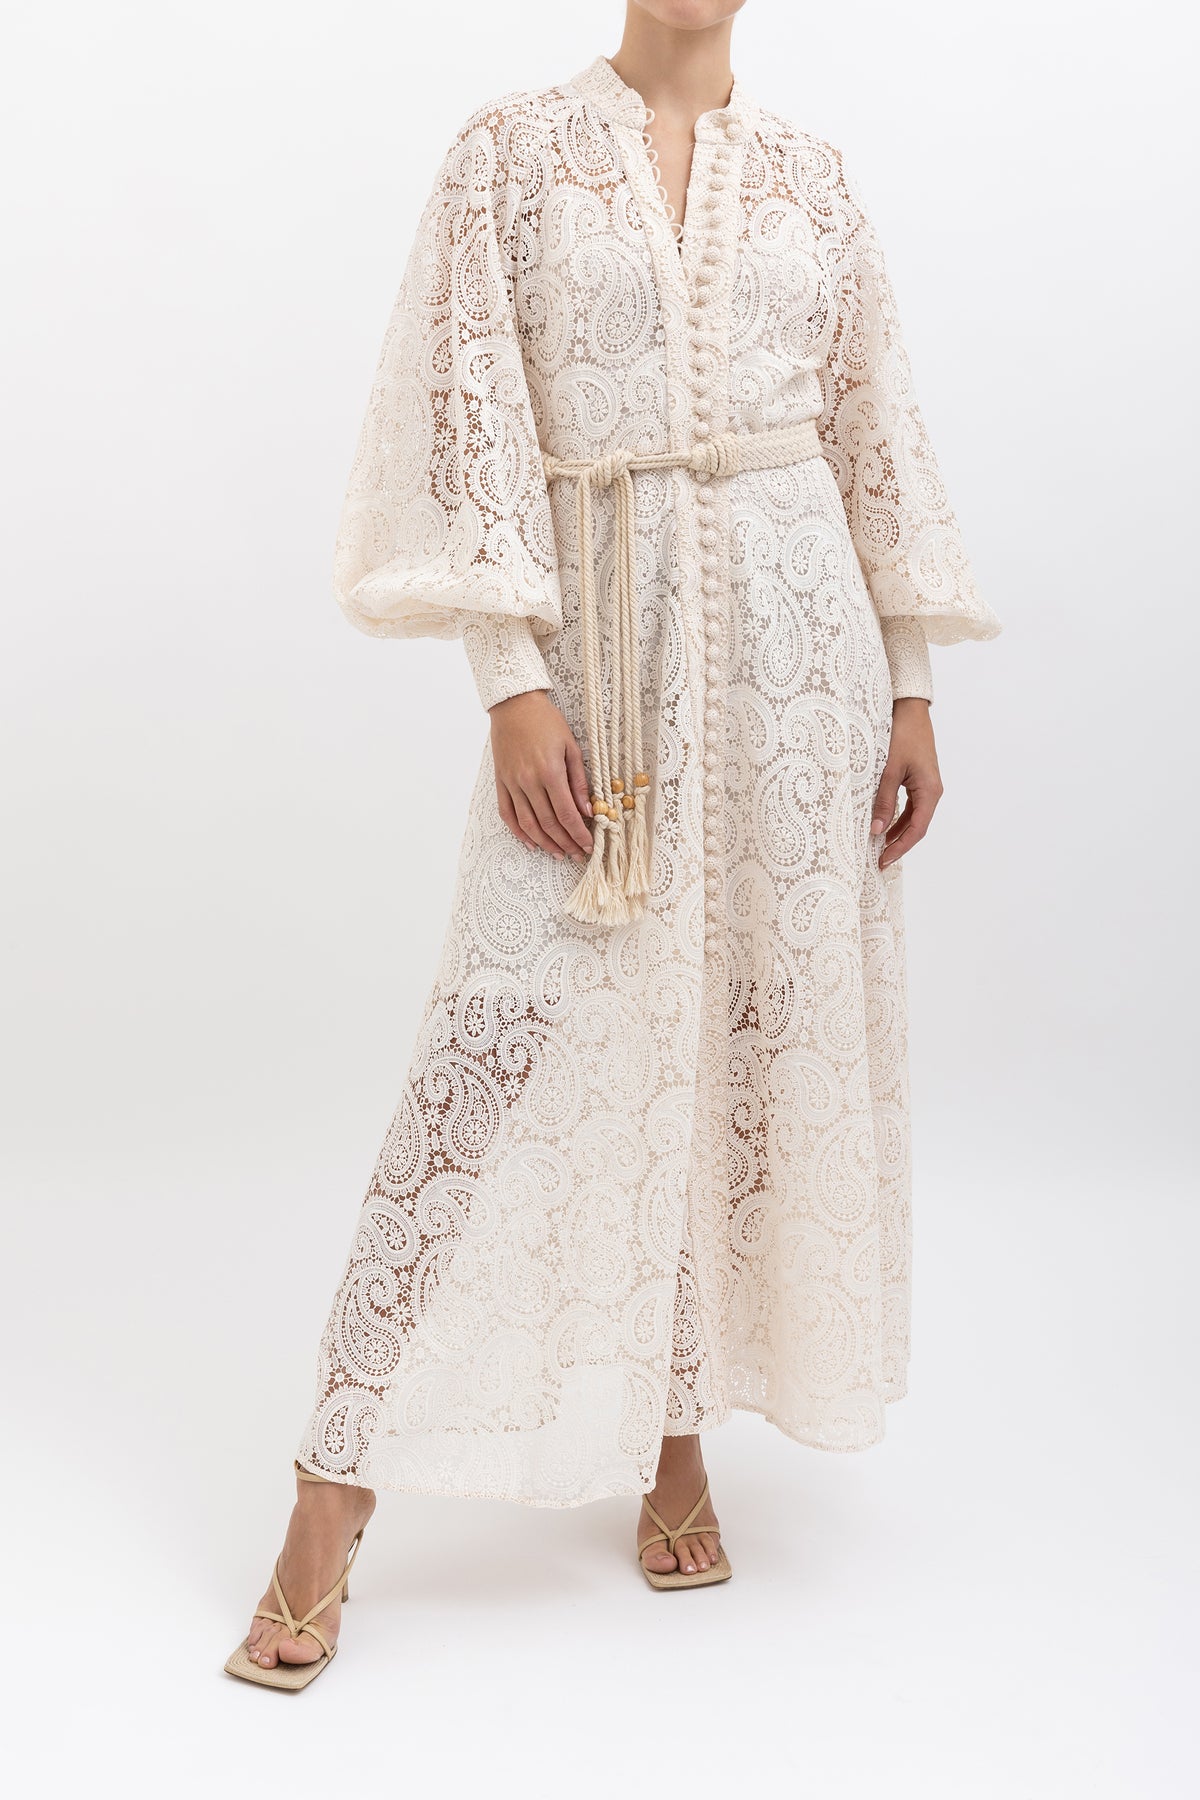 Amari Paisley Lace Dress